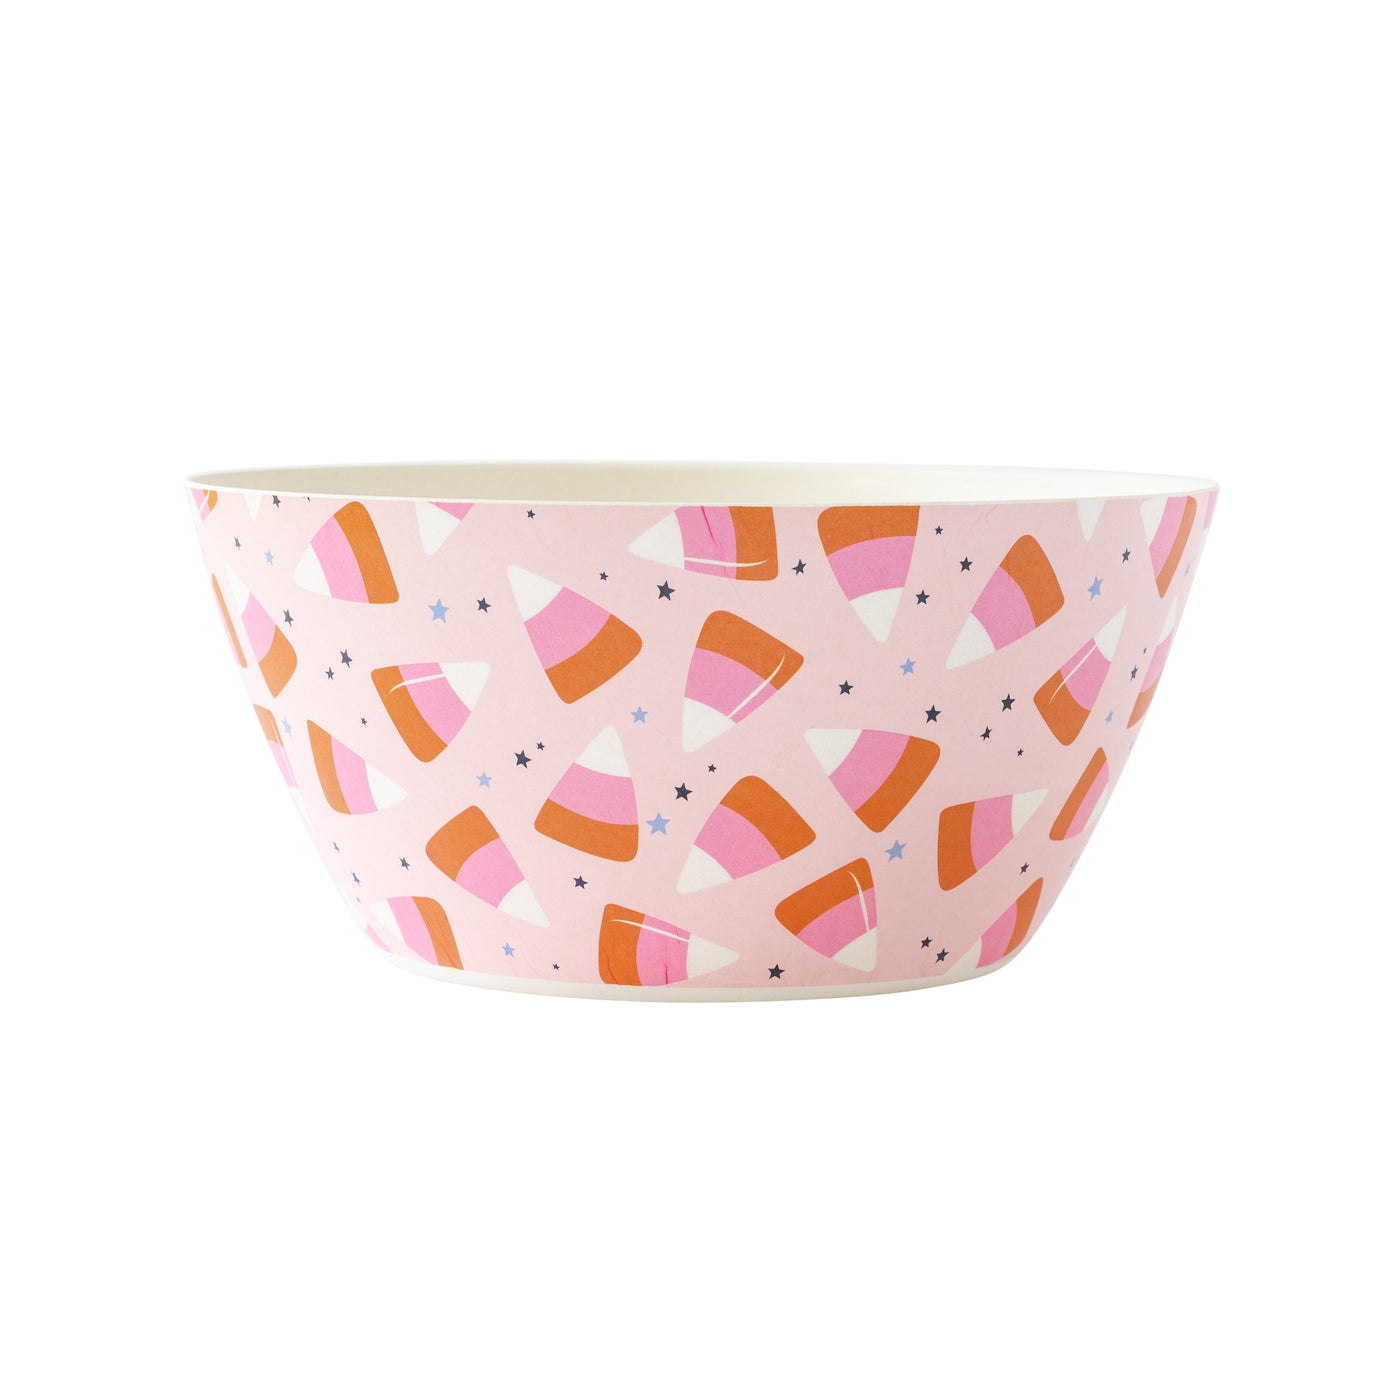 PLBB121 -  Pink Candy Corn Reusable Bamboo Bowl